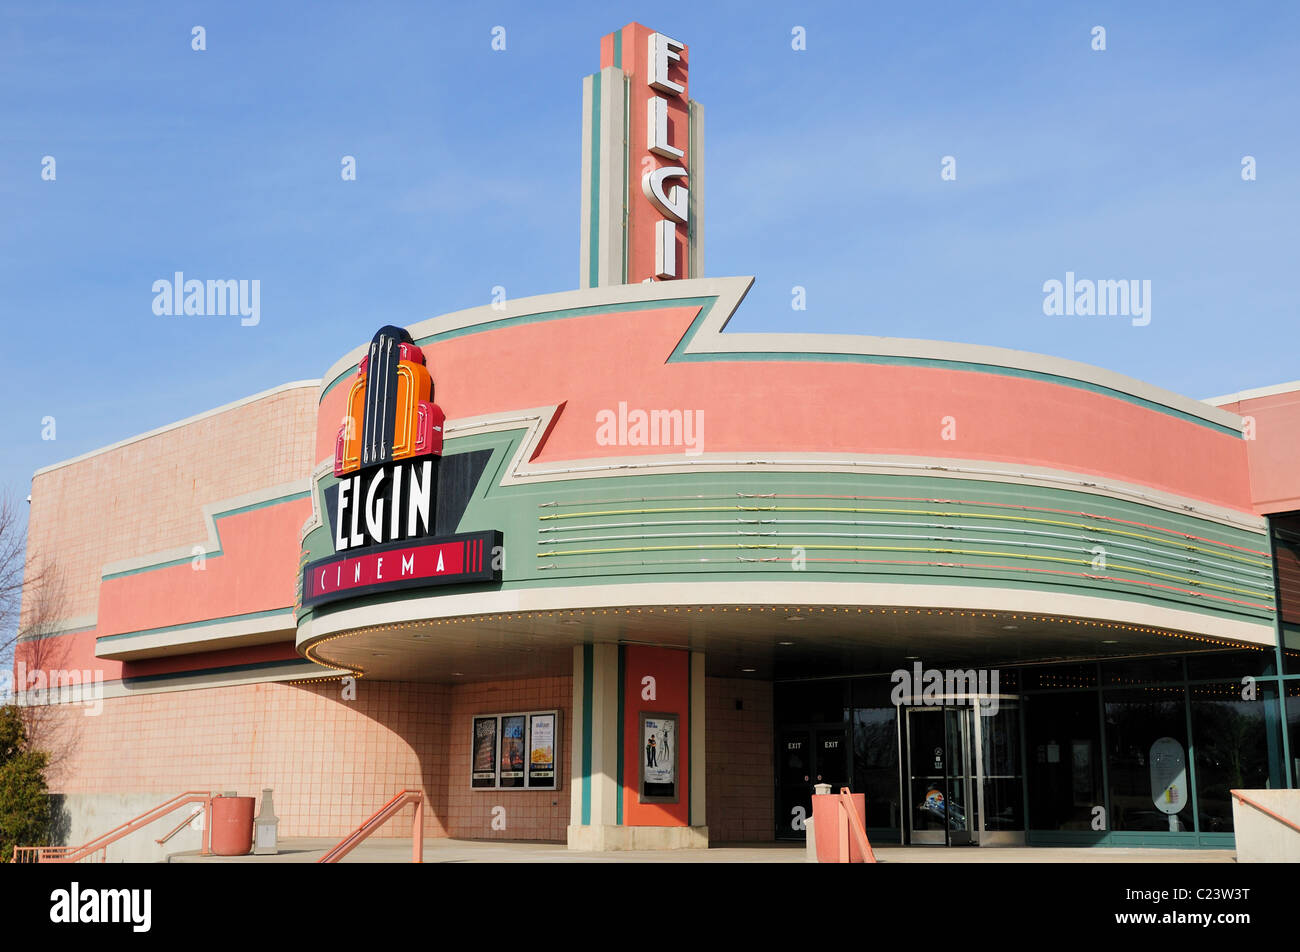 L'art déco cinéma Elgin. Elgin, Illinois, USA. Banque D'Images